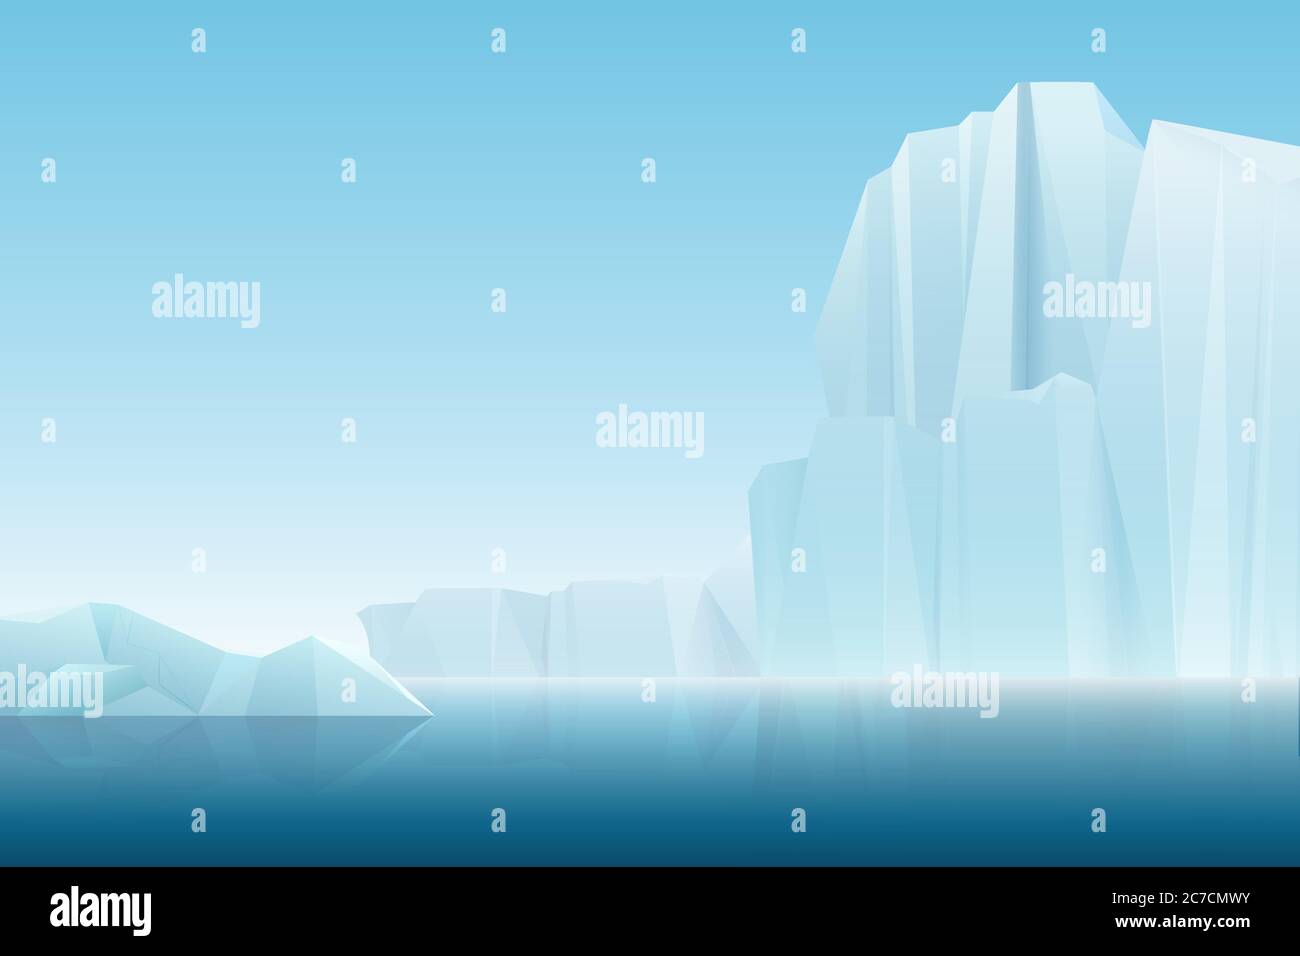 Fotorealistica nebbia tenue ghiaccio artico montagne con mare blu, paesaggio invernale. Illustrazione di sfondo natura vettoriale Illustrazione Vettoriale